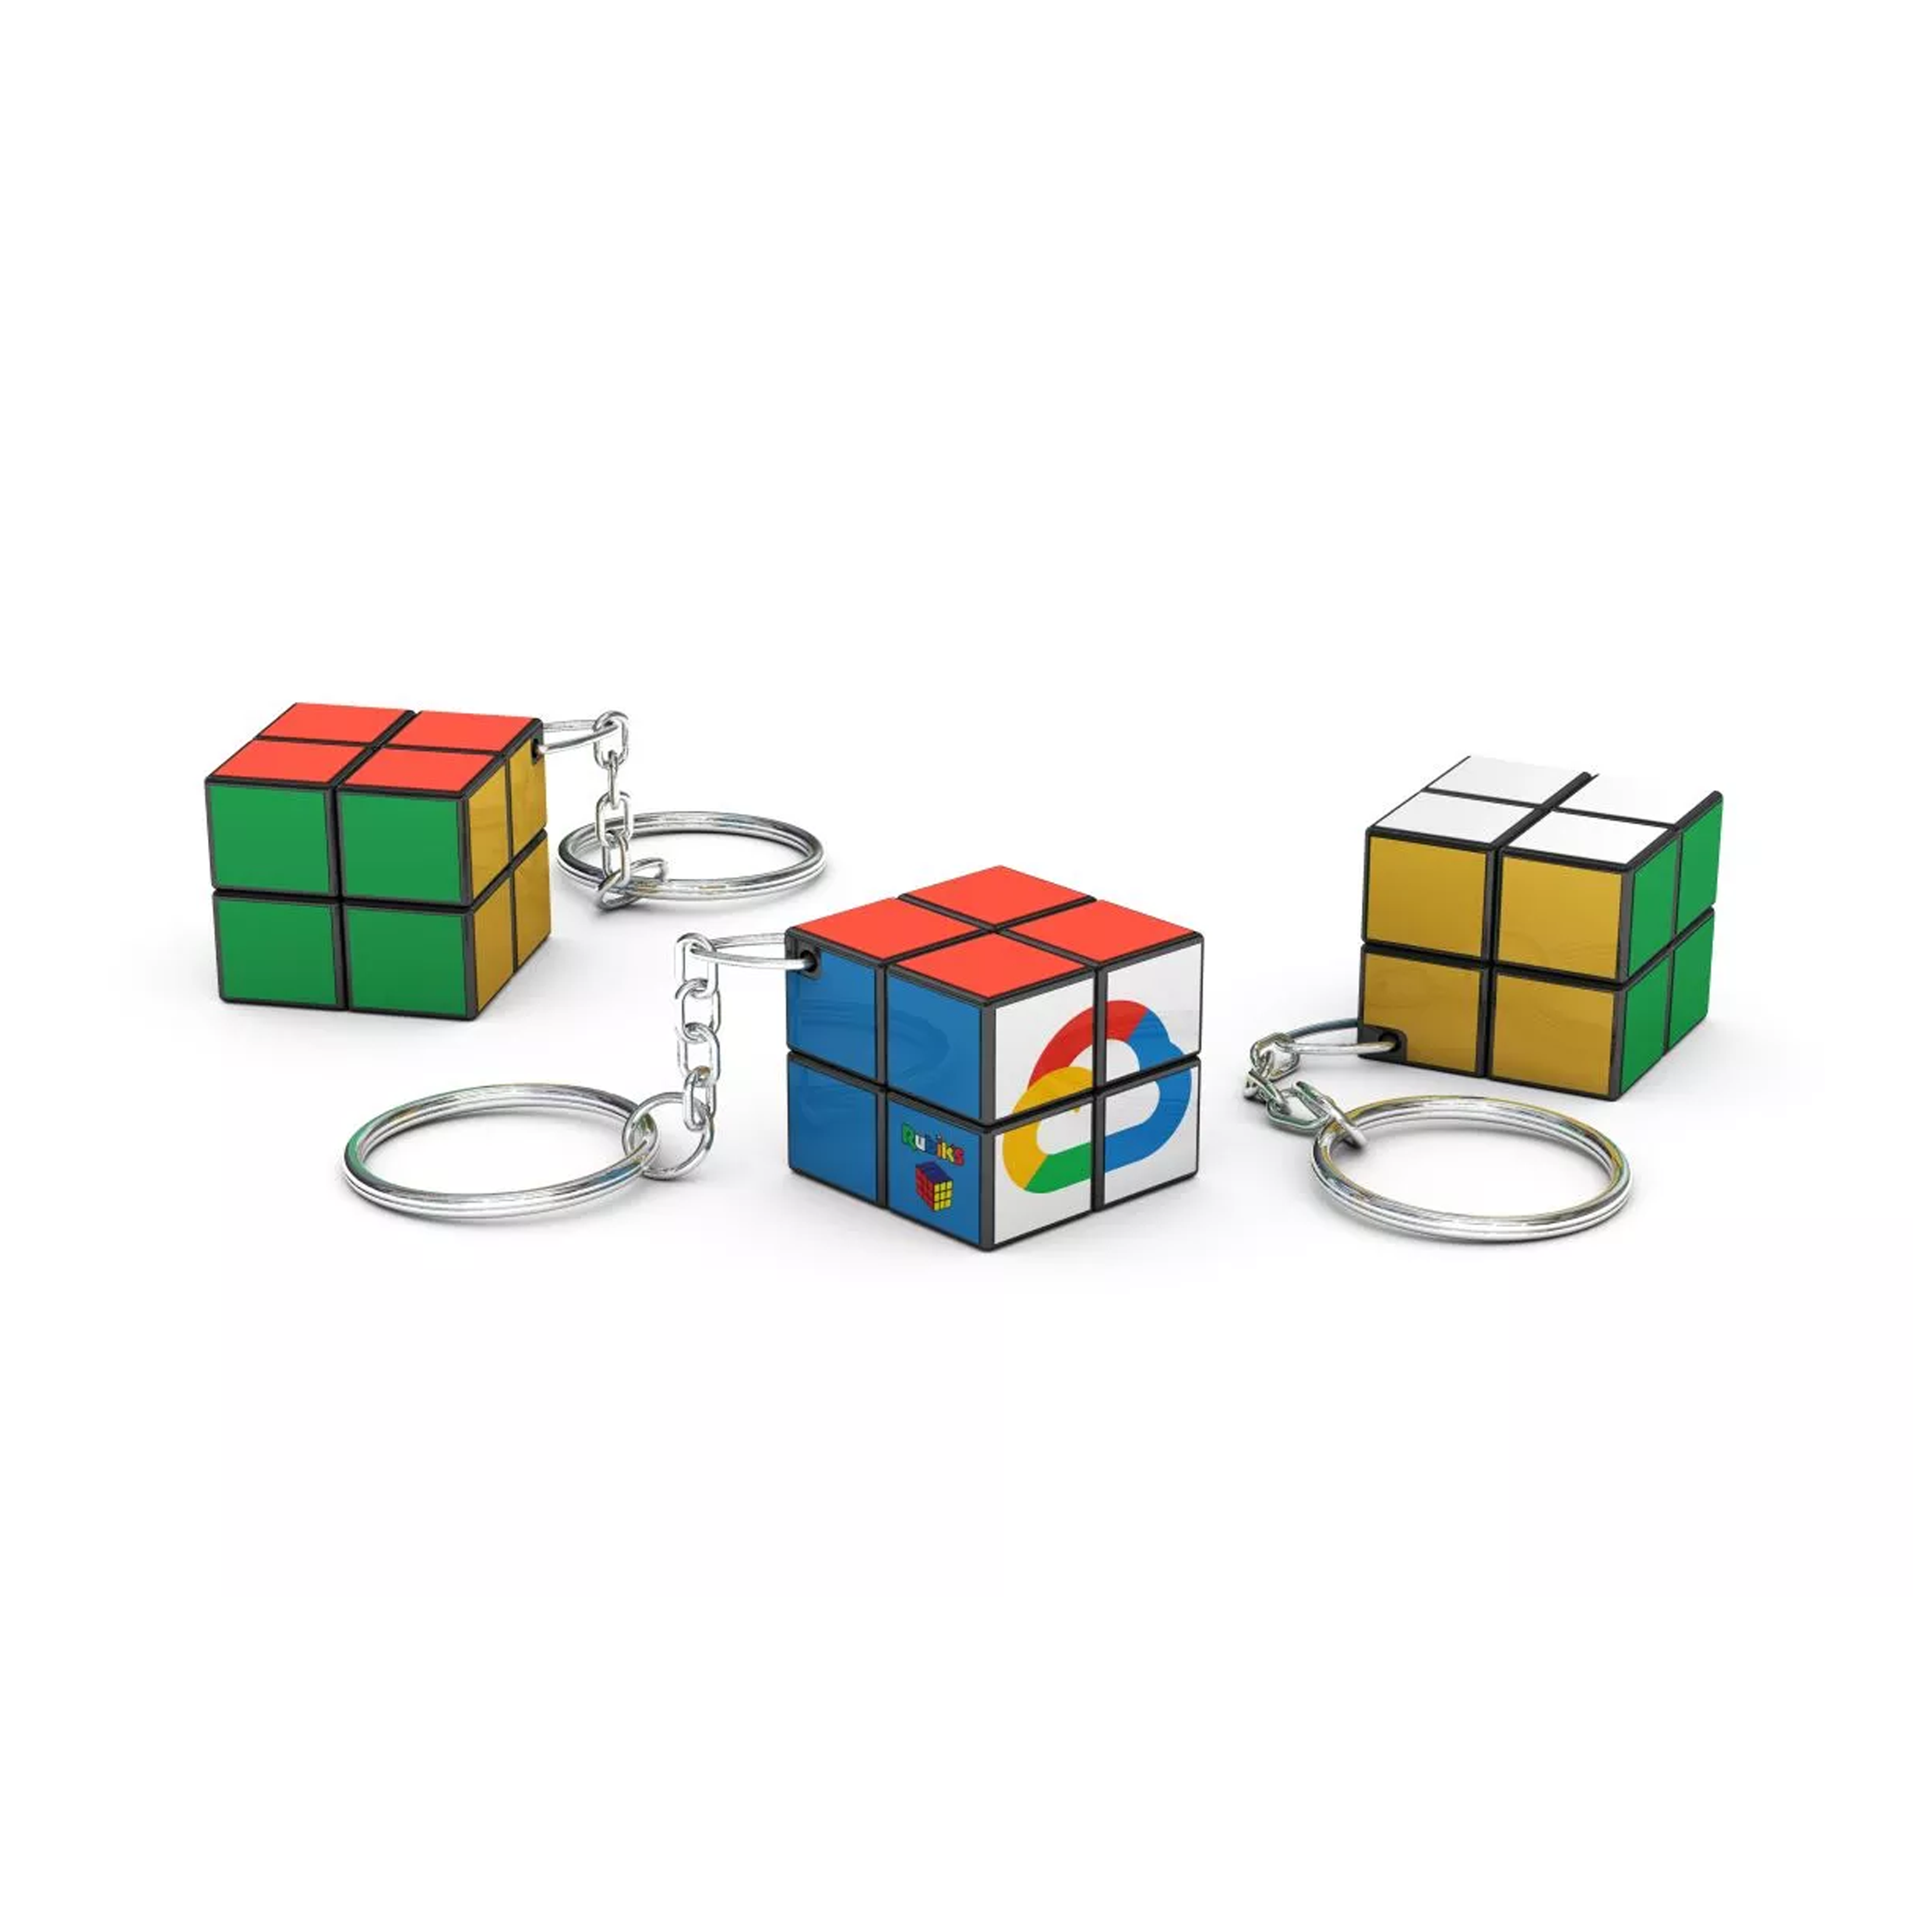 Porte-clés Rubik's Cube 2x2 (24mm) - Saint-Didier-sur-Doulon - Zaprinta Belgique